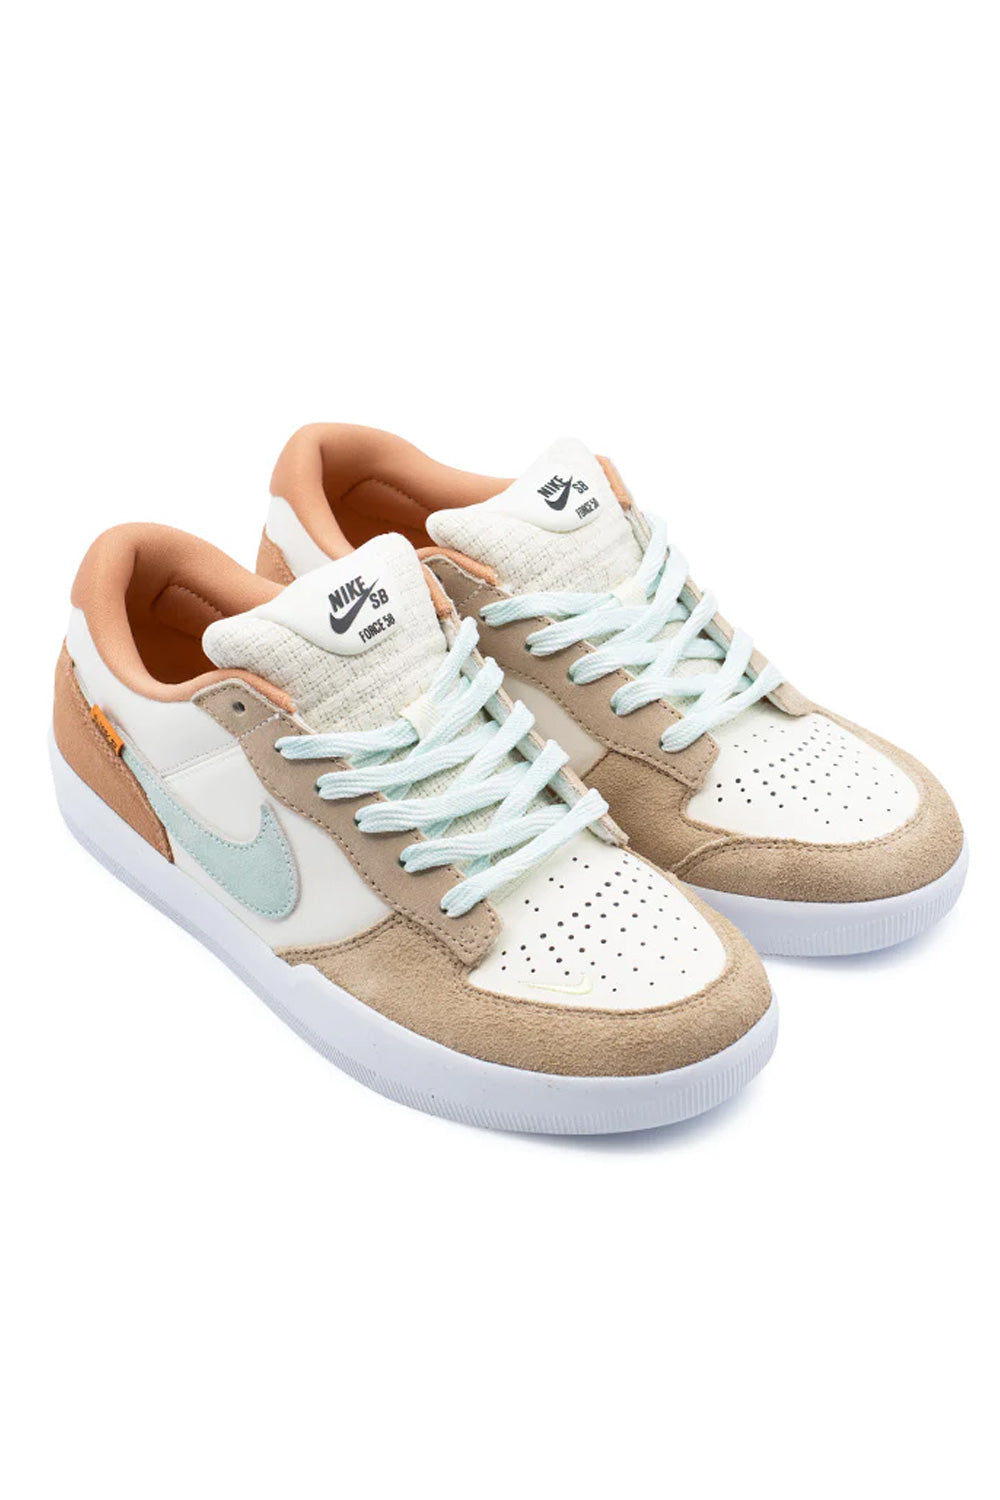 Nike SB Force 58 Shoe Pale Ivory / Jade Ice / White Hemp - BONKERS